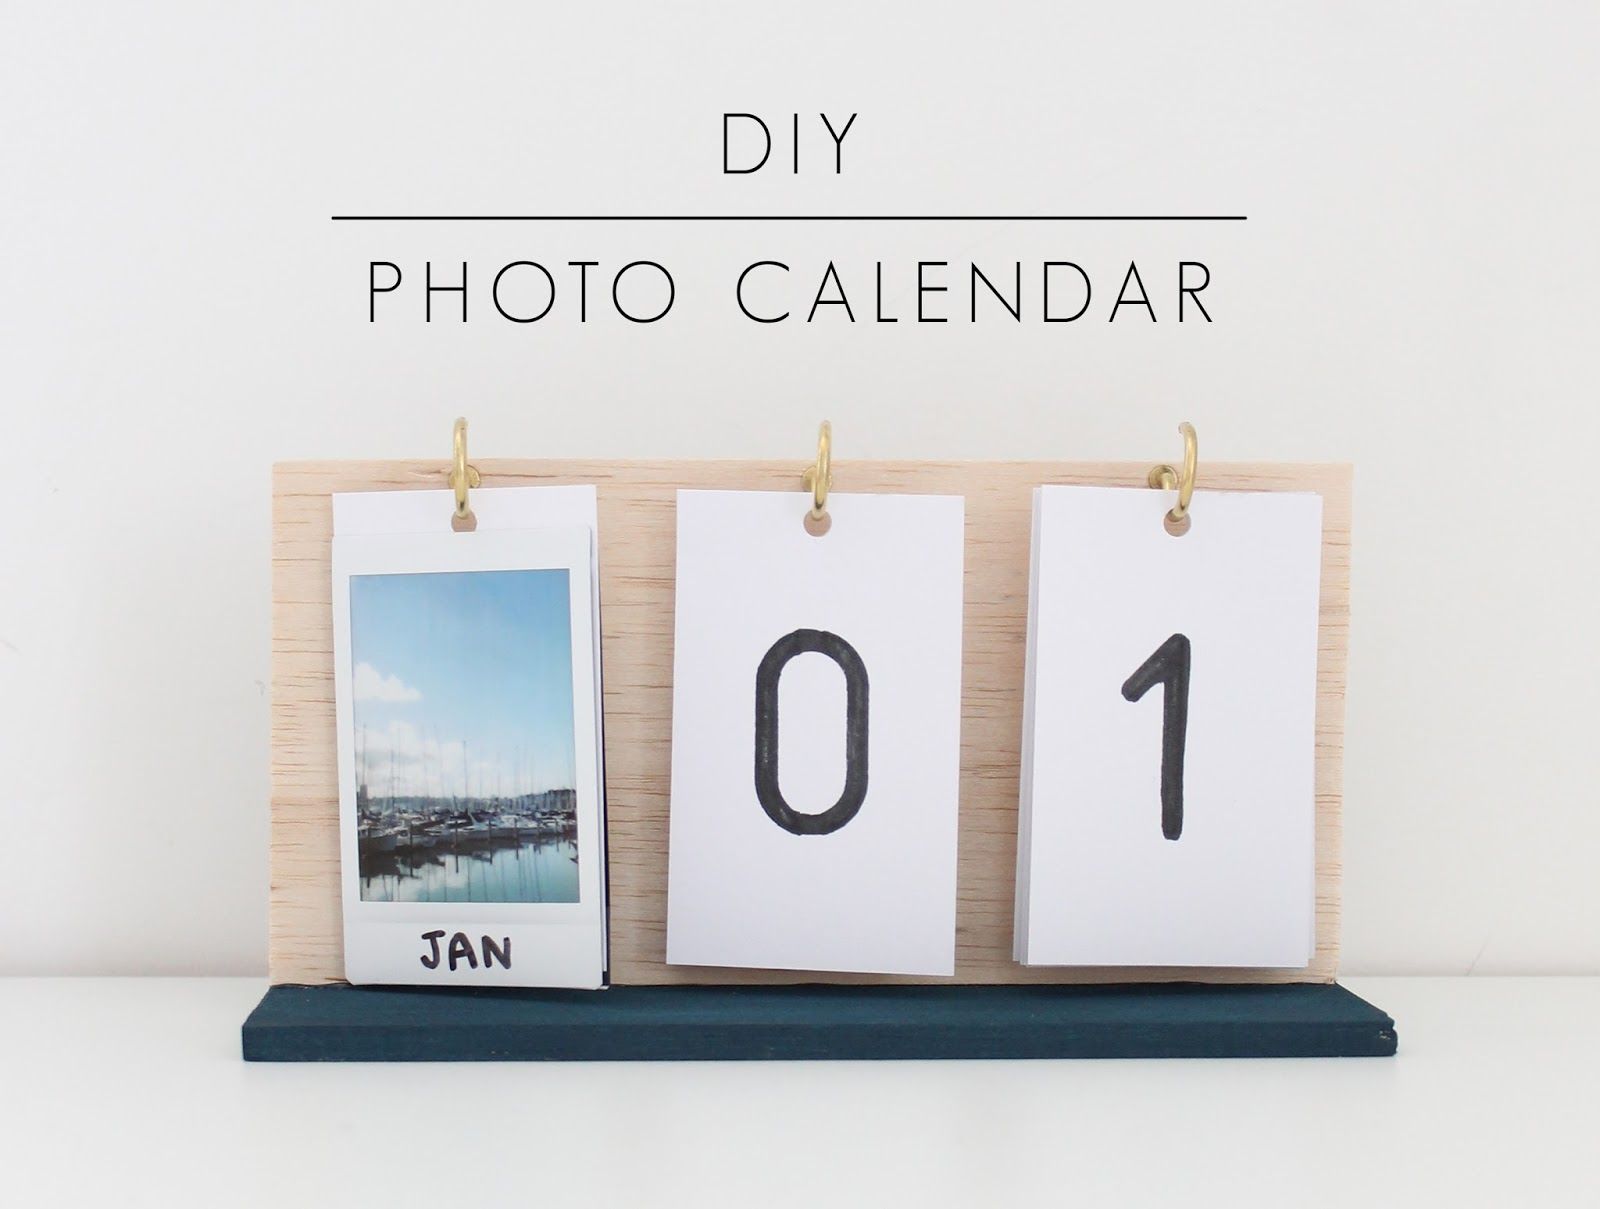 5 Ide Membuat Kalender Sendiri Untuk Tahun